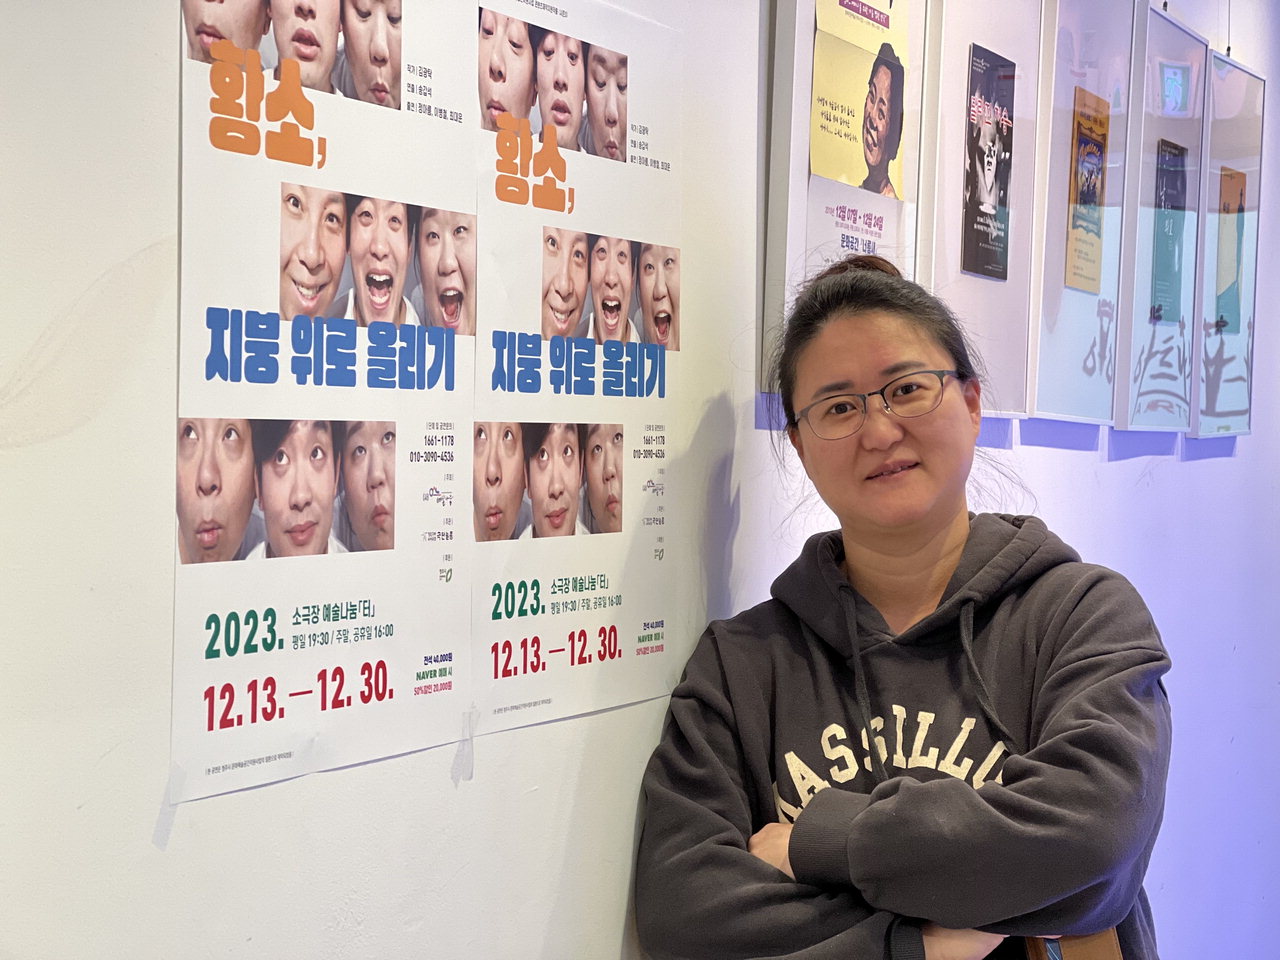 천은영 예술나눔터 대표가 지난 18일 공연장 포스터앞에서 환하게 웃고 있다.  / 박은지